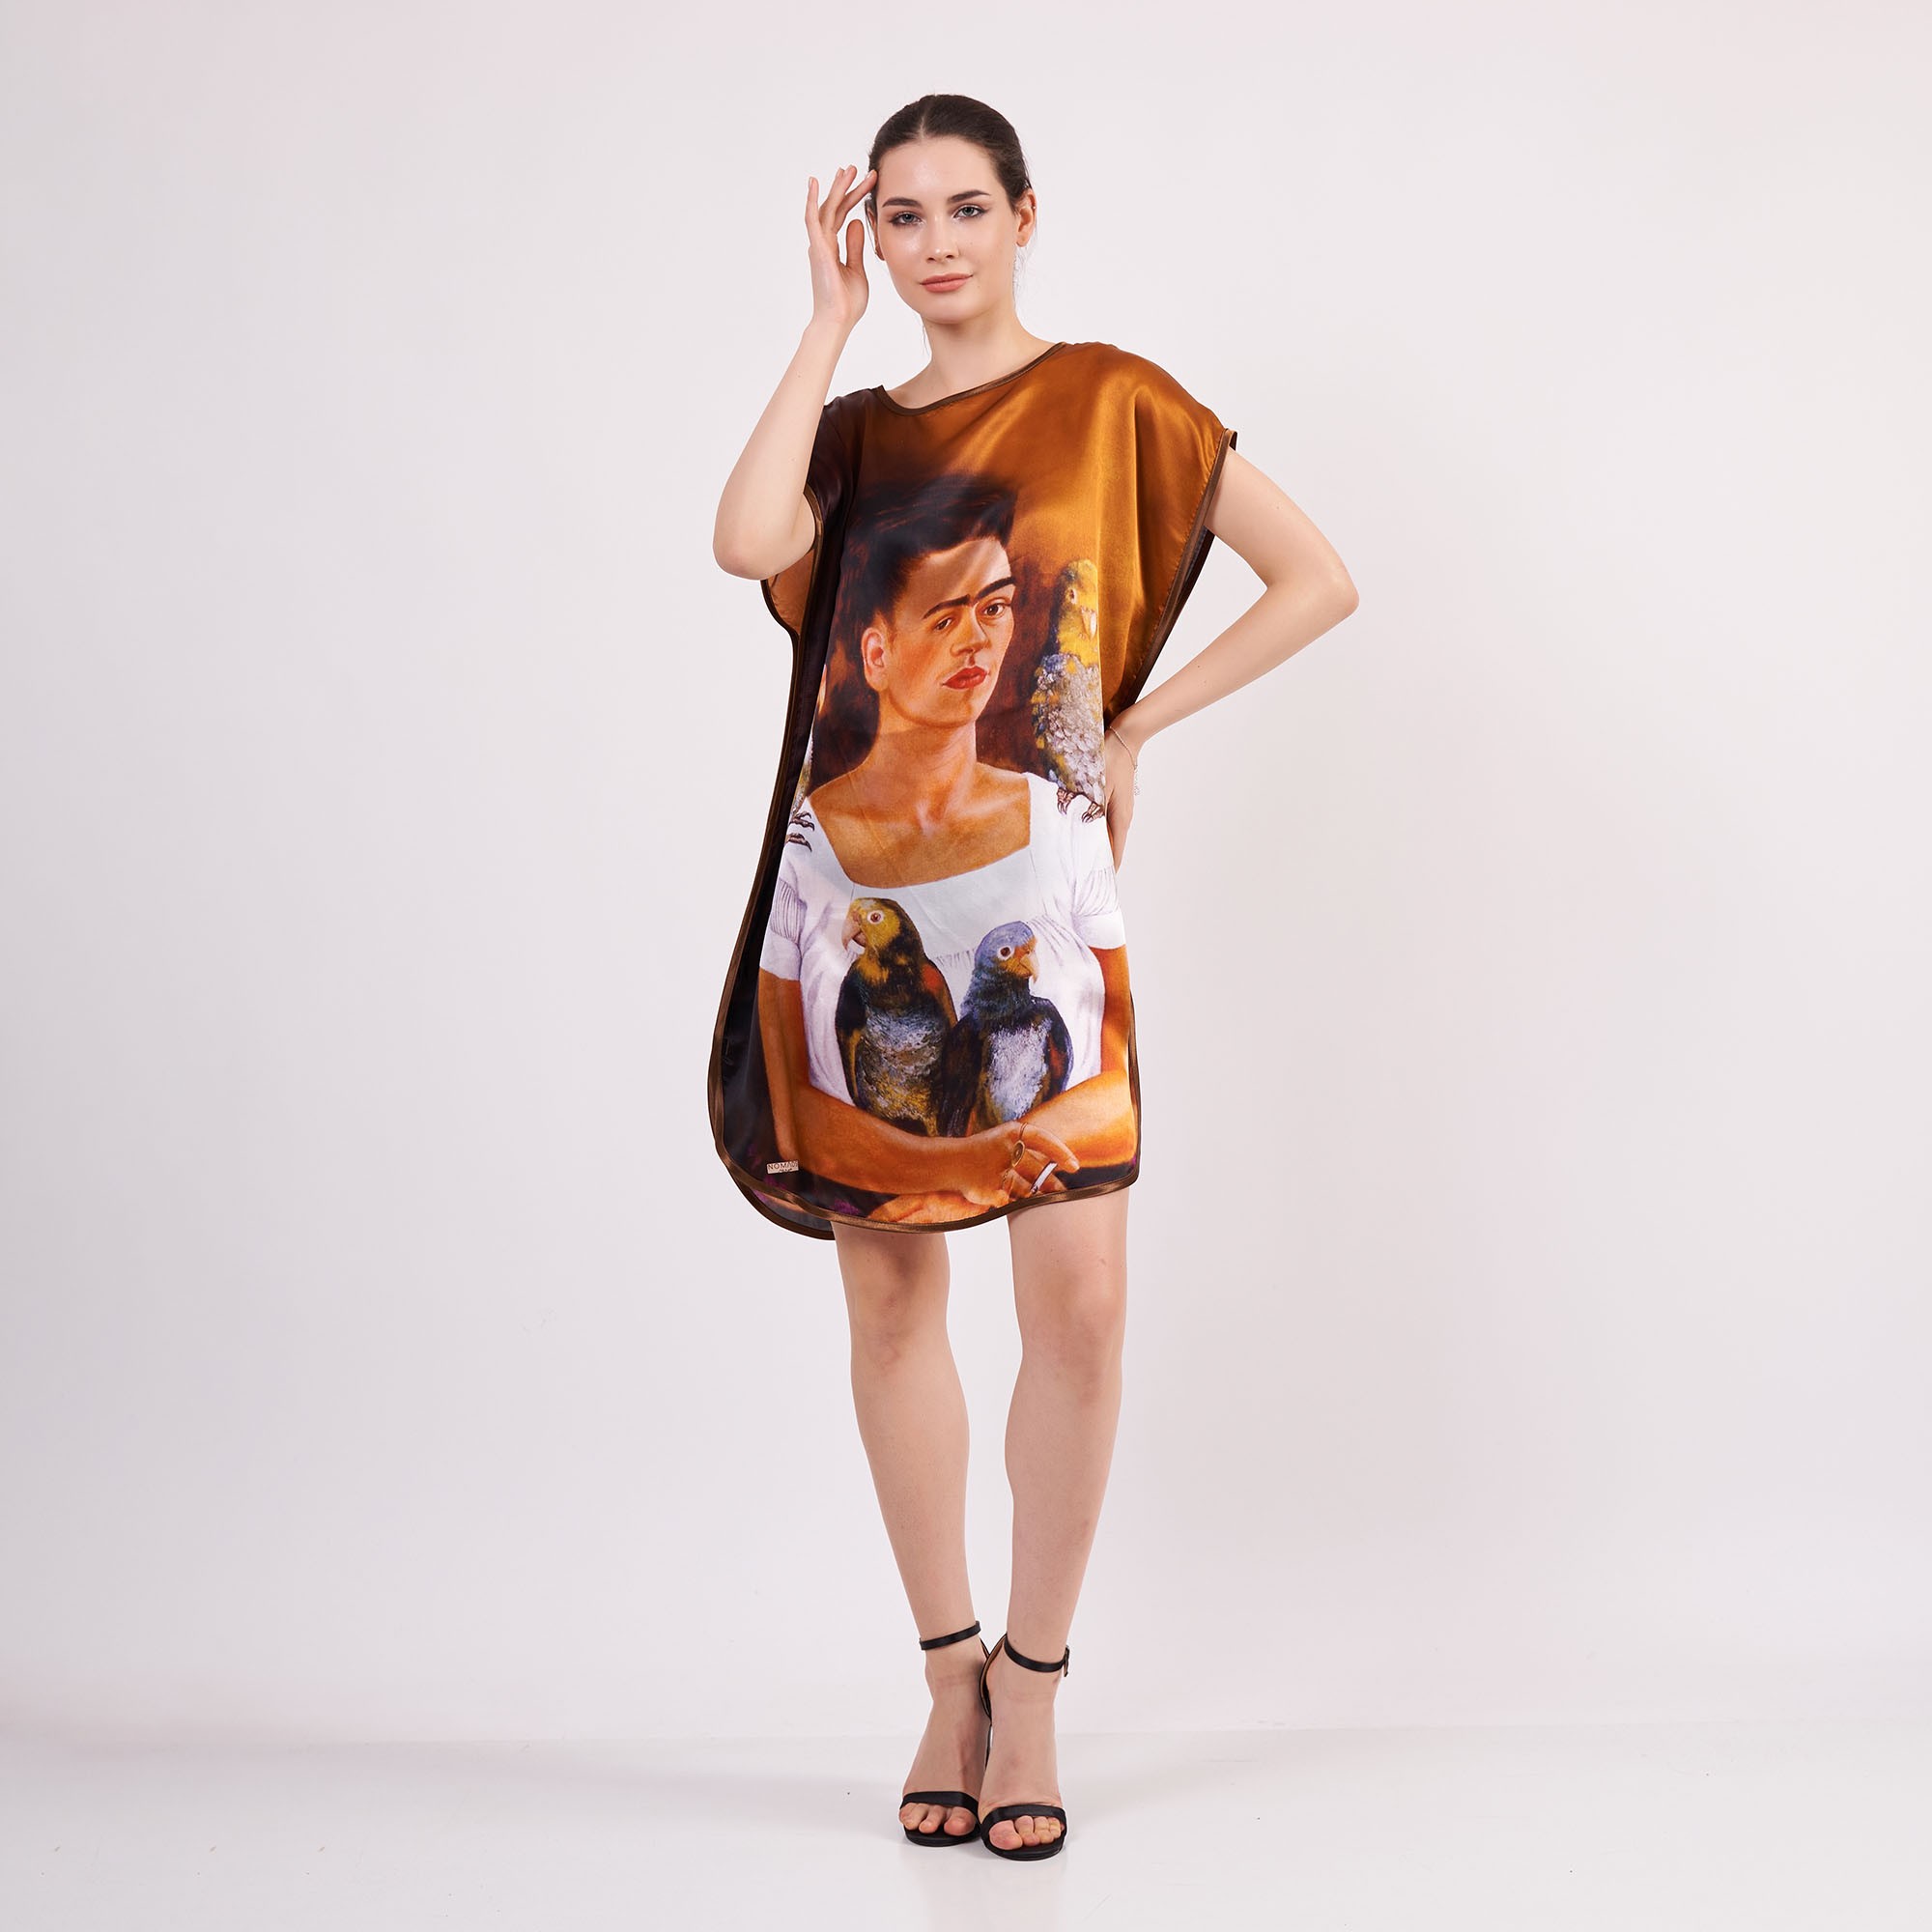 Saf İpek Kısa Elbise | Frida Kahlo 2 | Nomads Felt